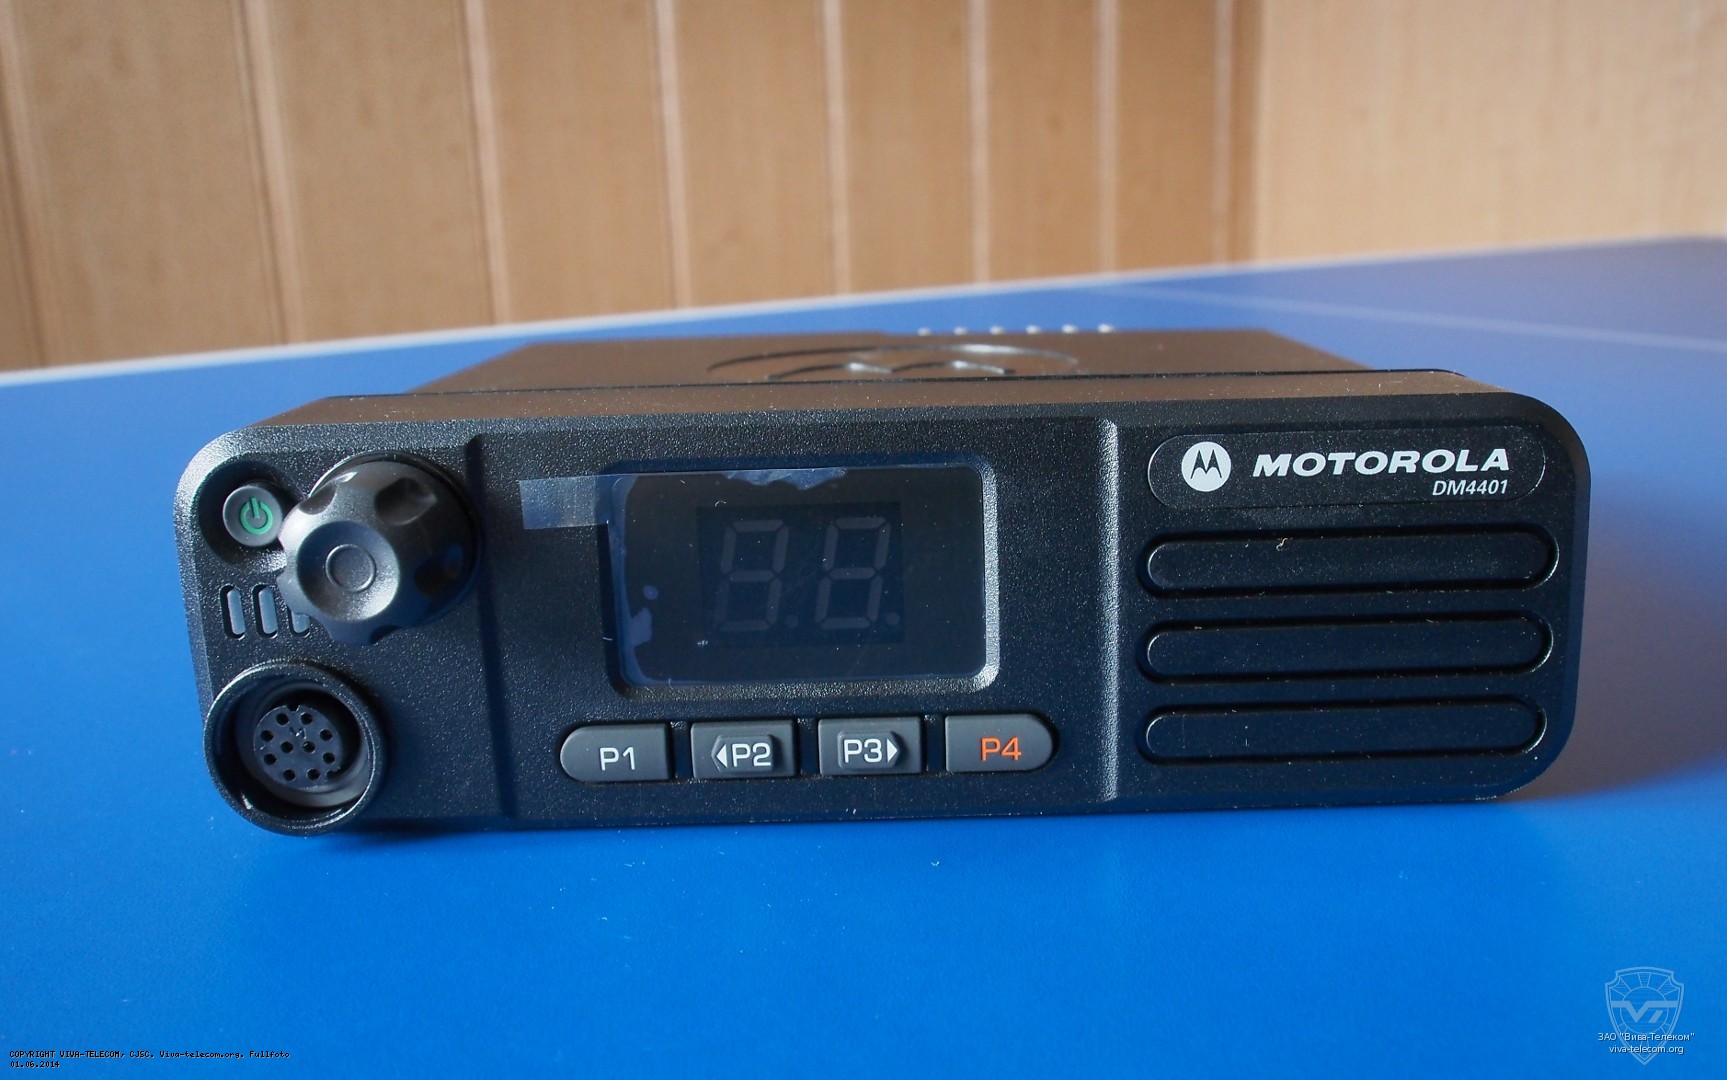    Motorola DM-4401